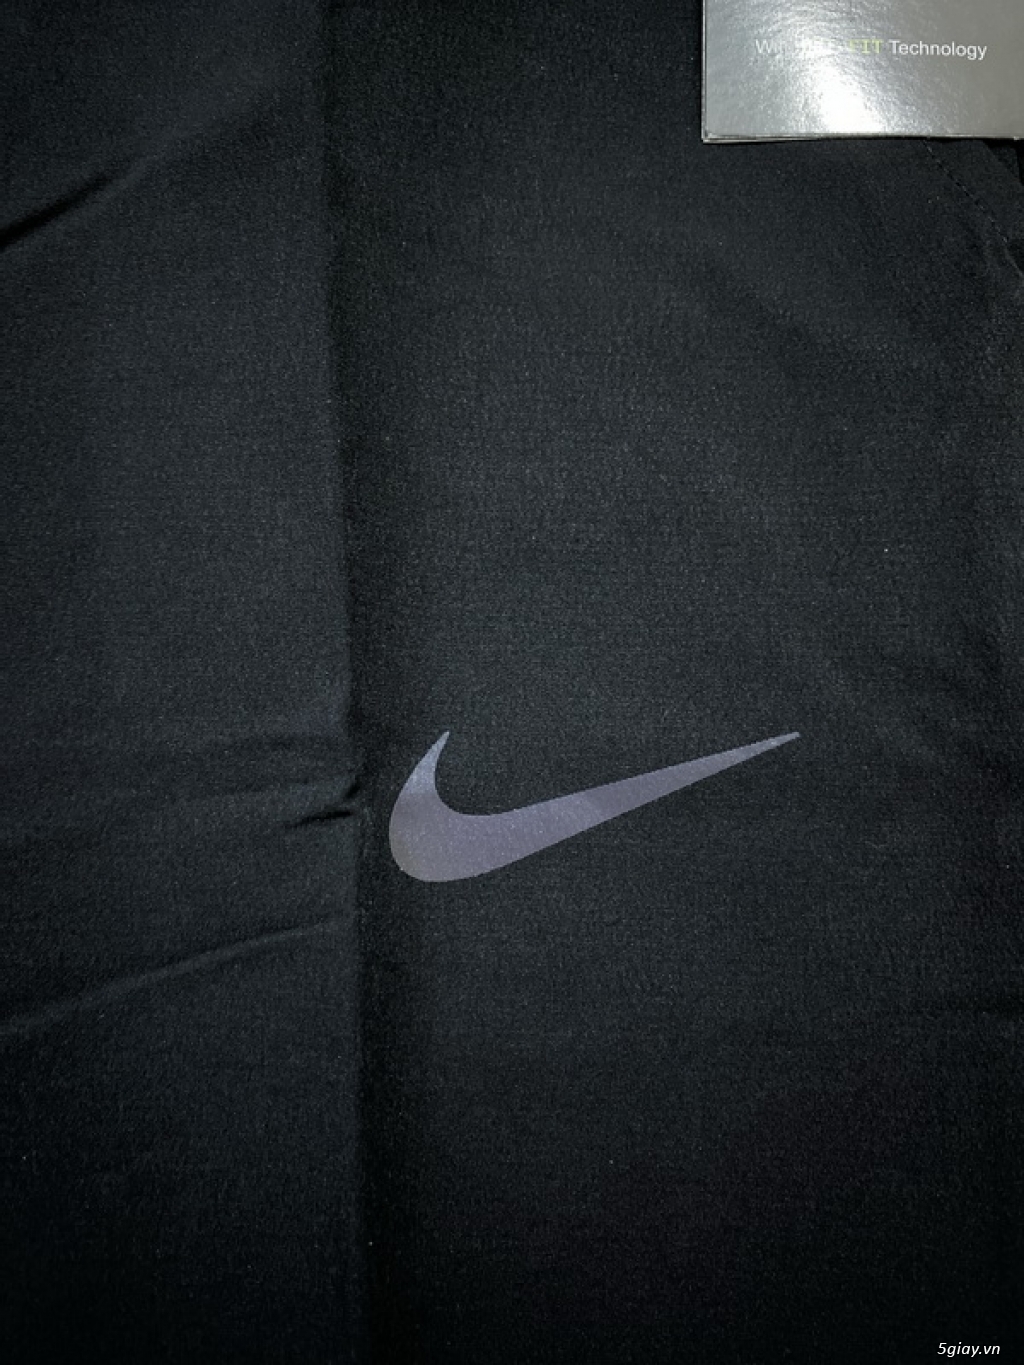 Áo thun, khoác, quần, nón Nike Adidas đủ loại, mẫu nhiều, đẹp, giá tốt - 37